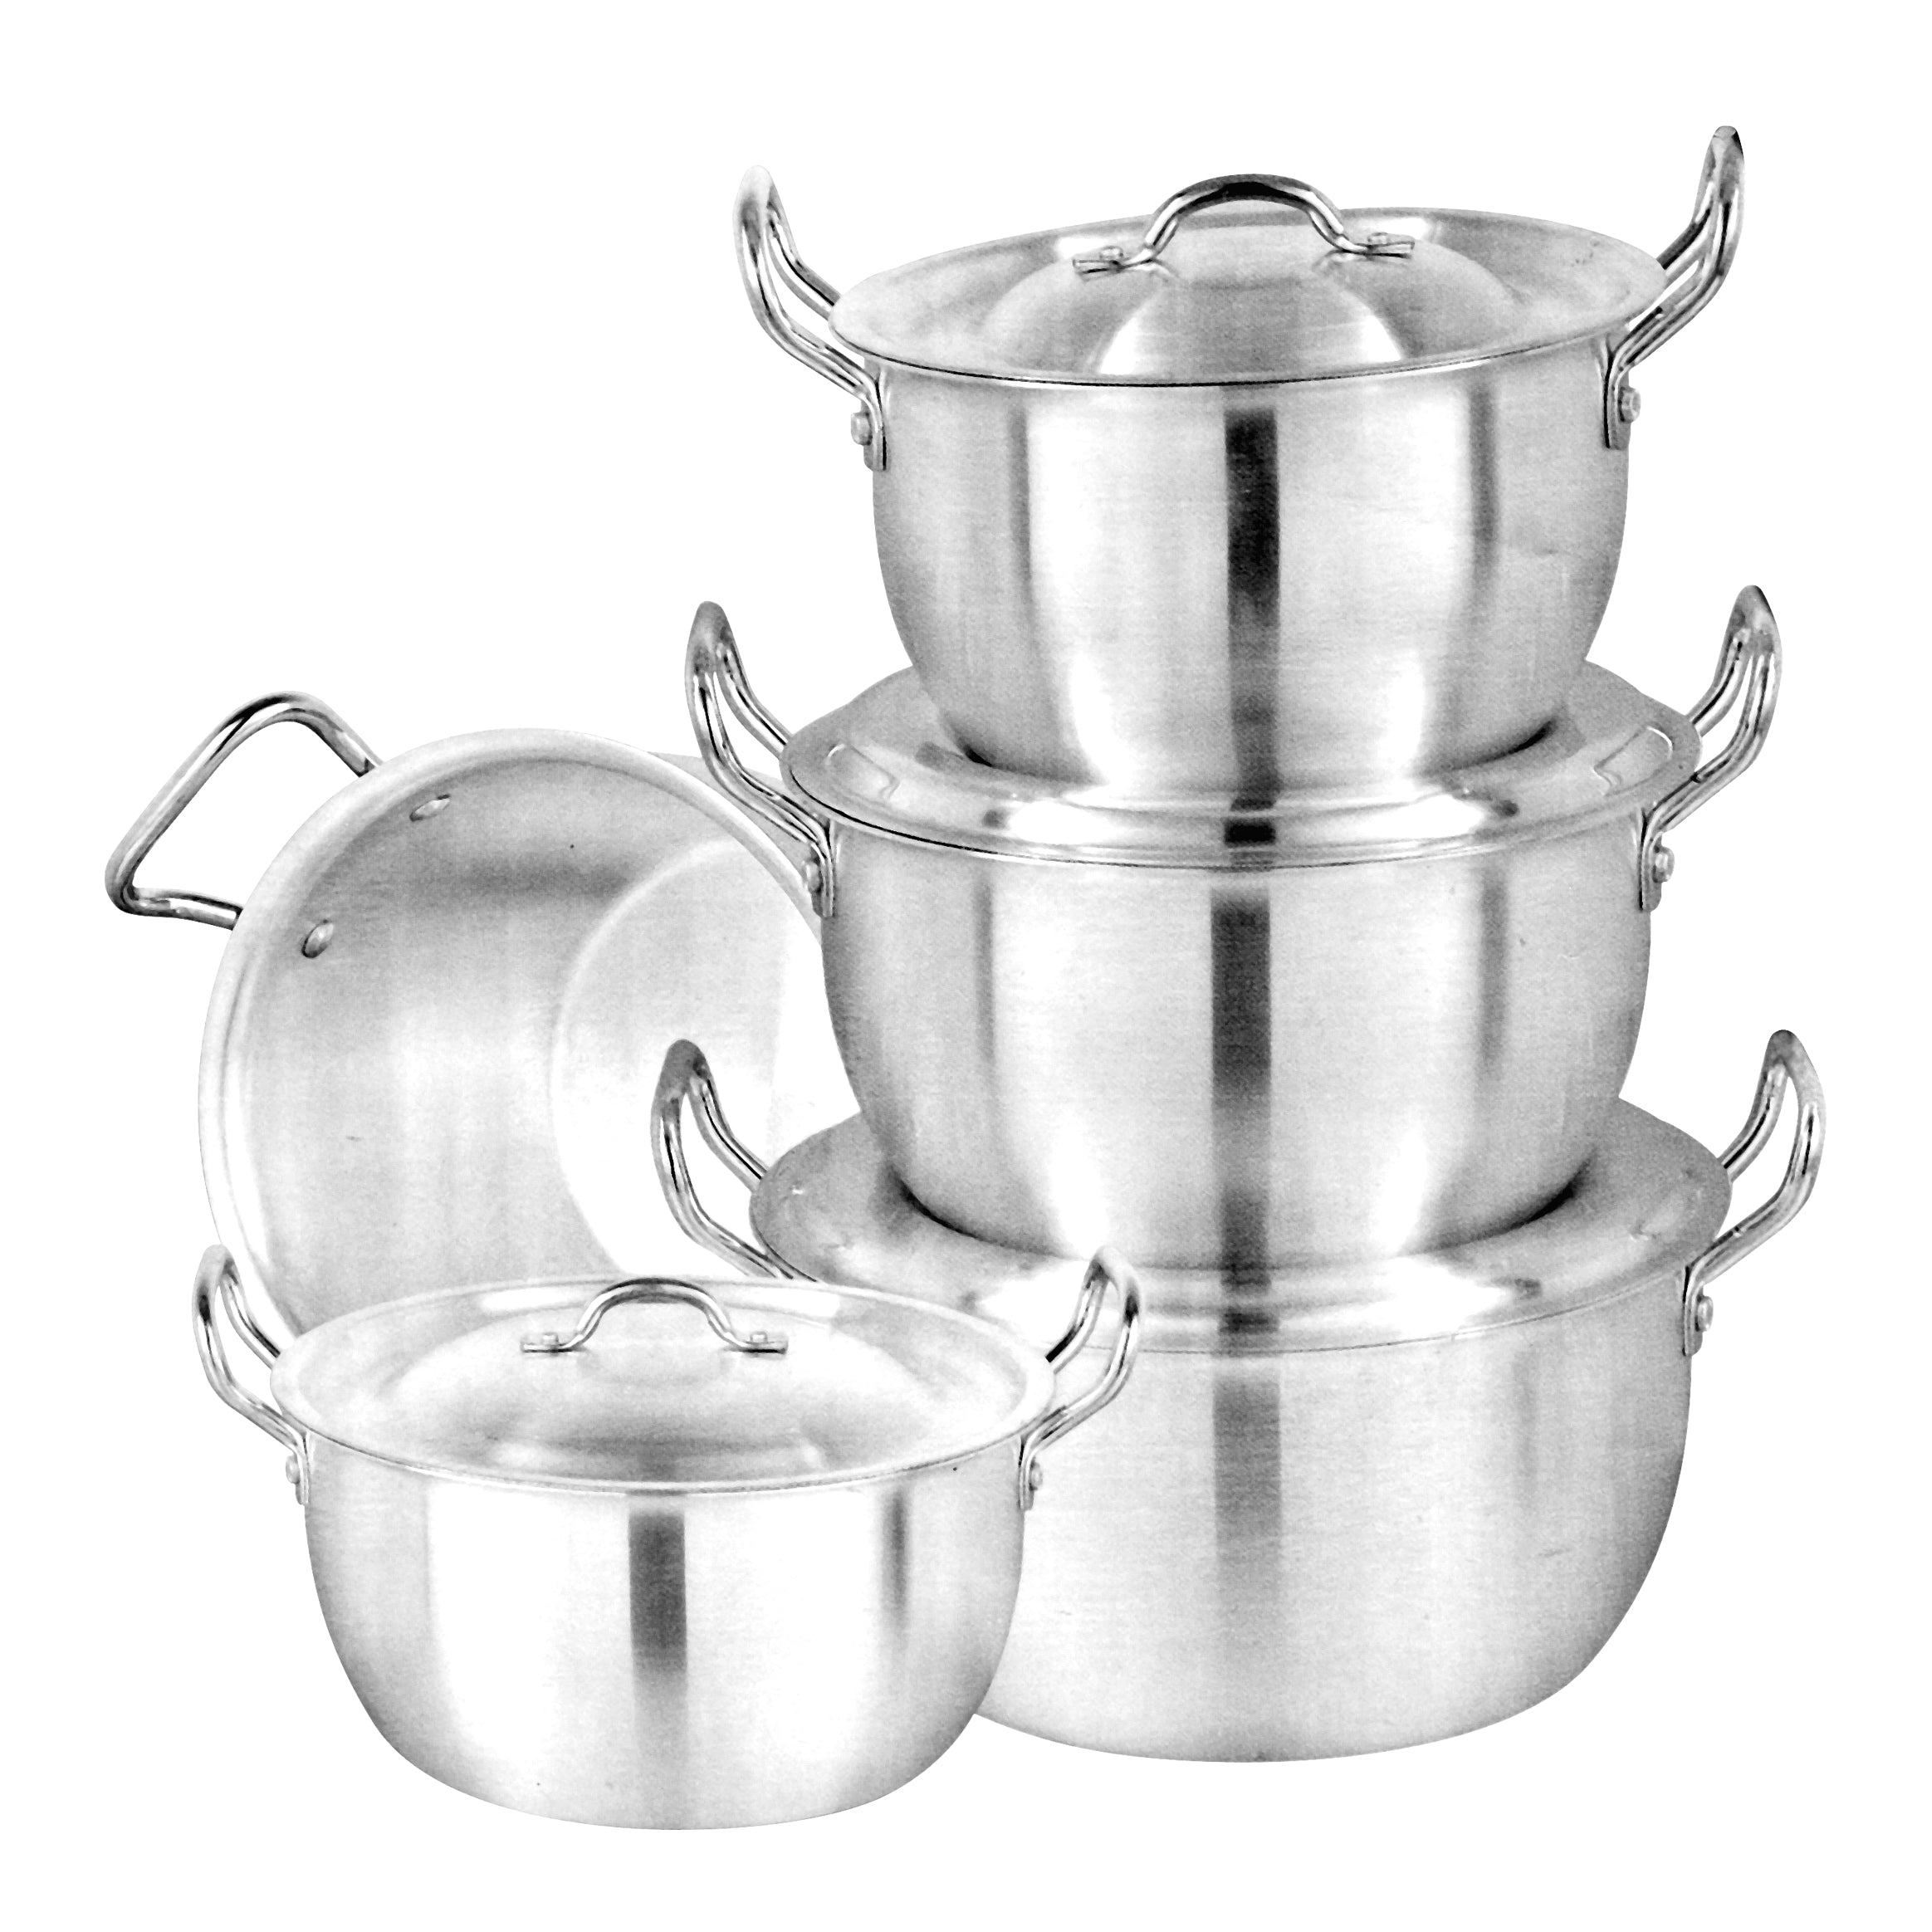 Aluminium Apple Pots - 5 Pcs Set